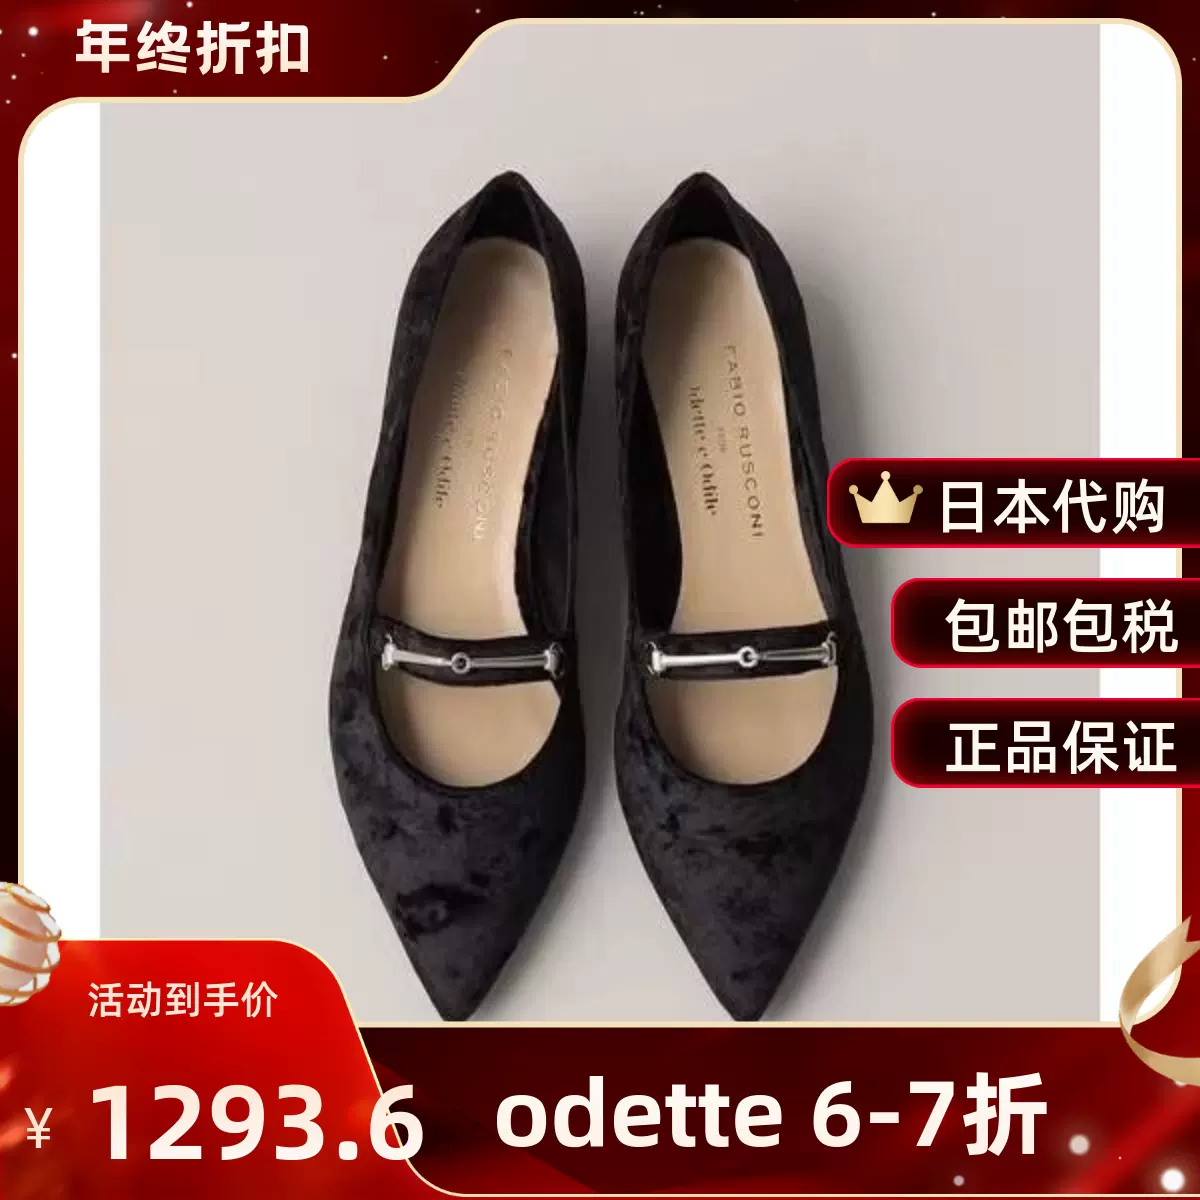 7折包邮小姐好白啦11月odette e odile丝绒尖头单鞋45513430240-Taobao